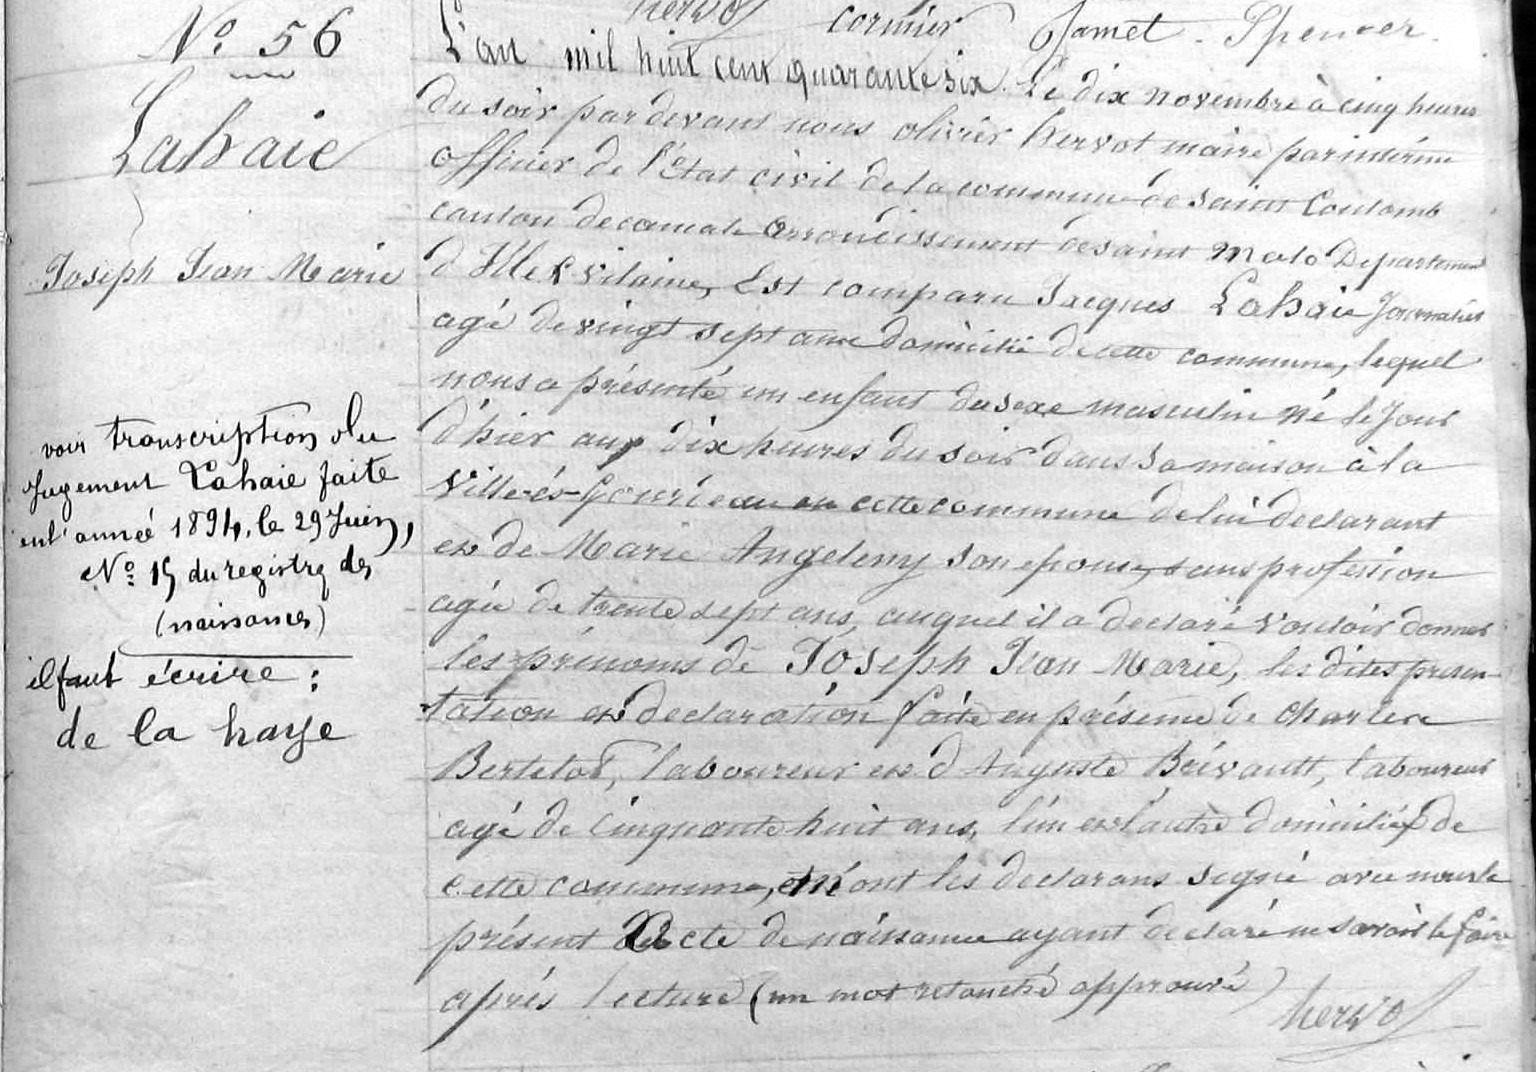 Acte de naissance de Joseph Jean Marie De La Haye le 9 novembre 1846 à Saint Coulomb. Archives départementales d'Ille et Villaine.